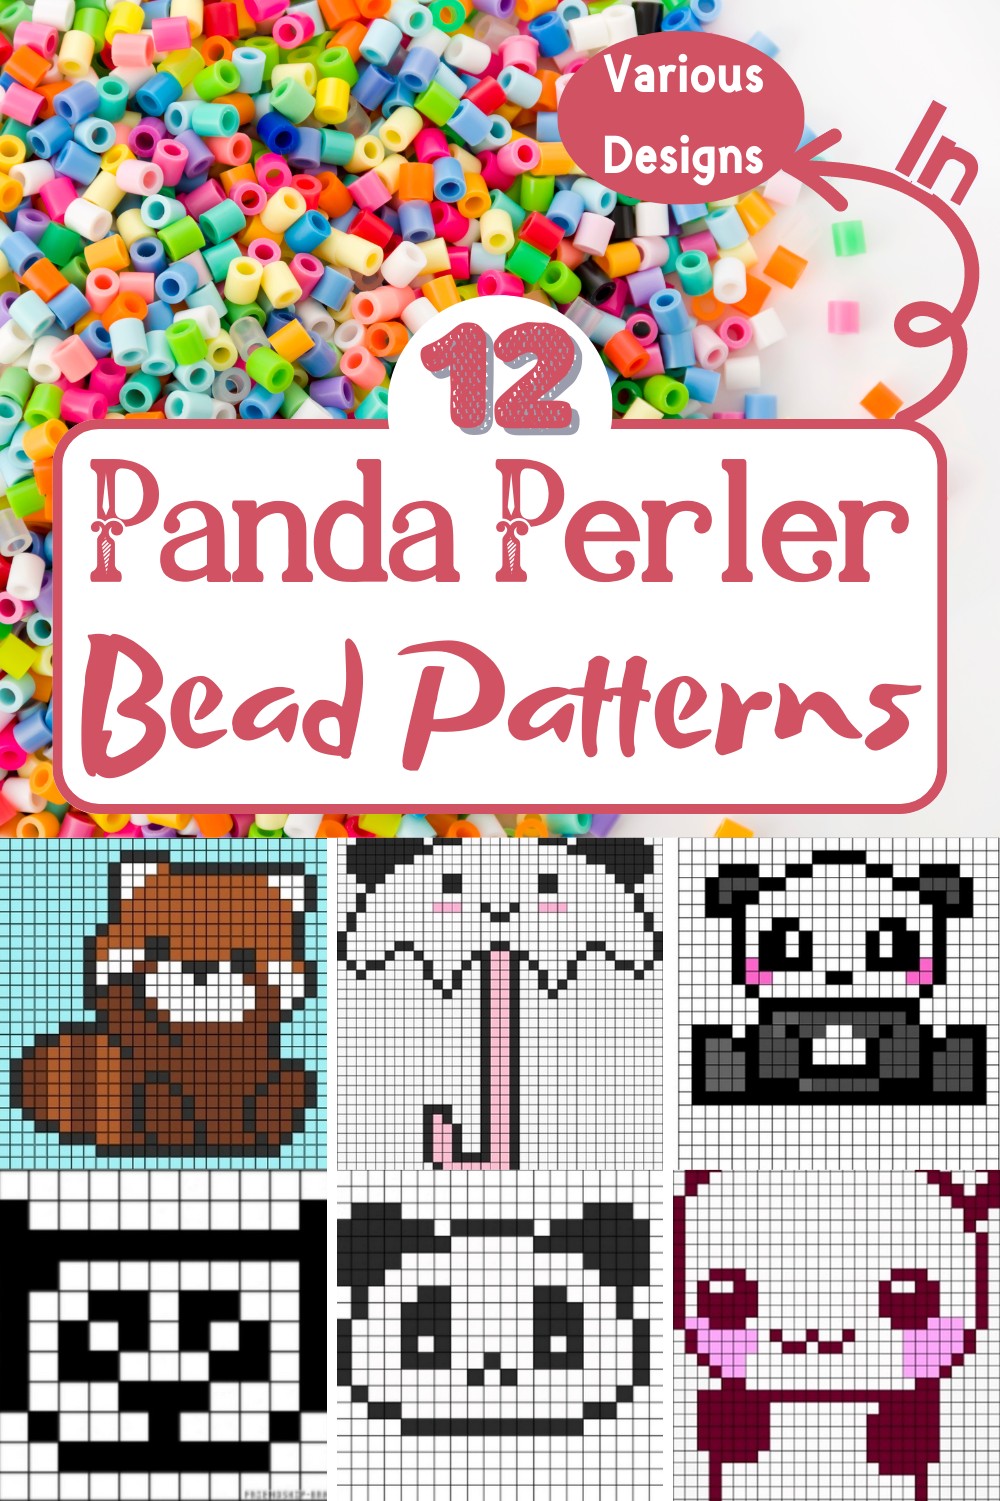 12 Panda Perler Bead Patterns In Various Designs